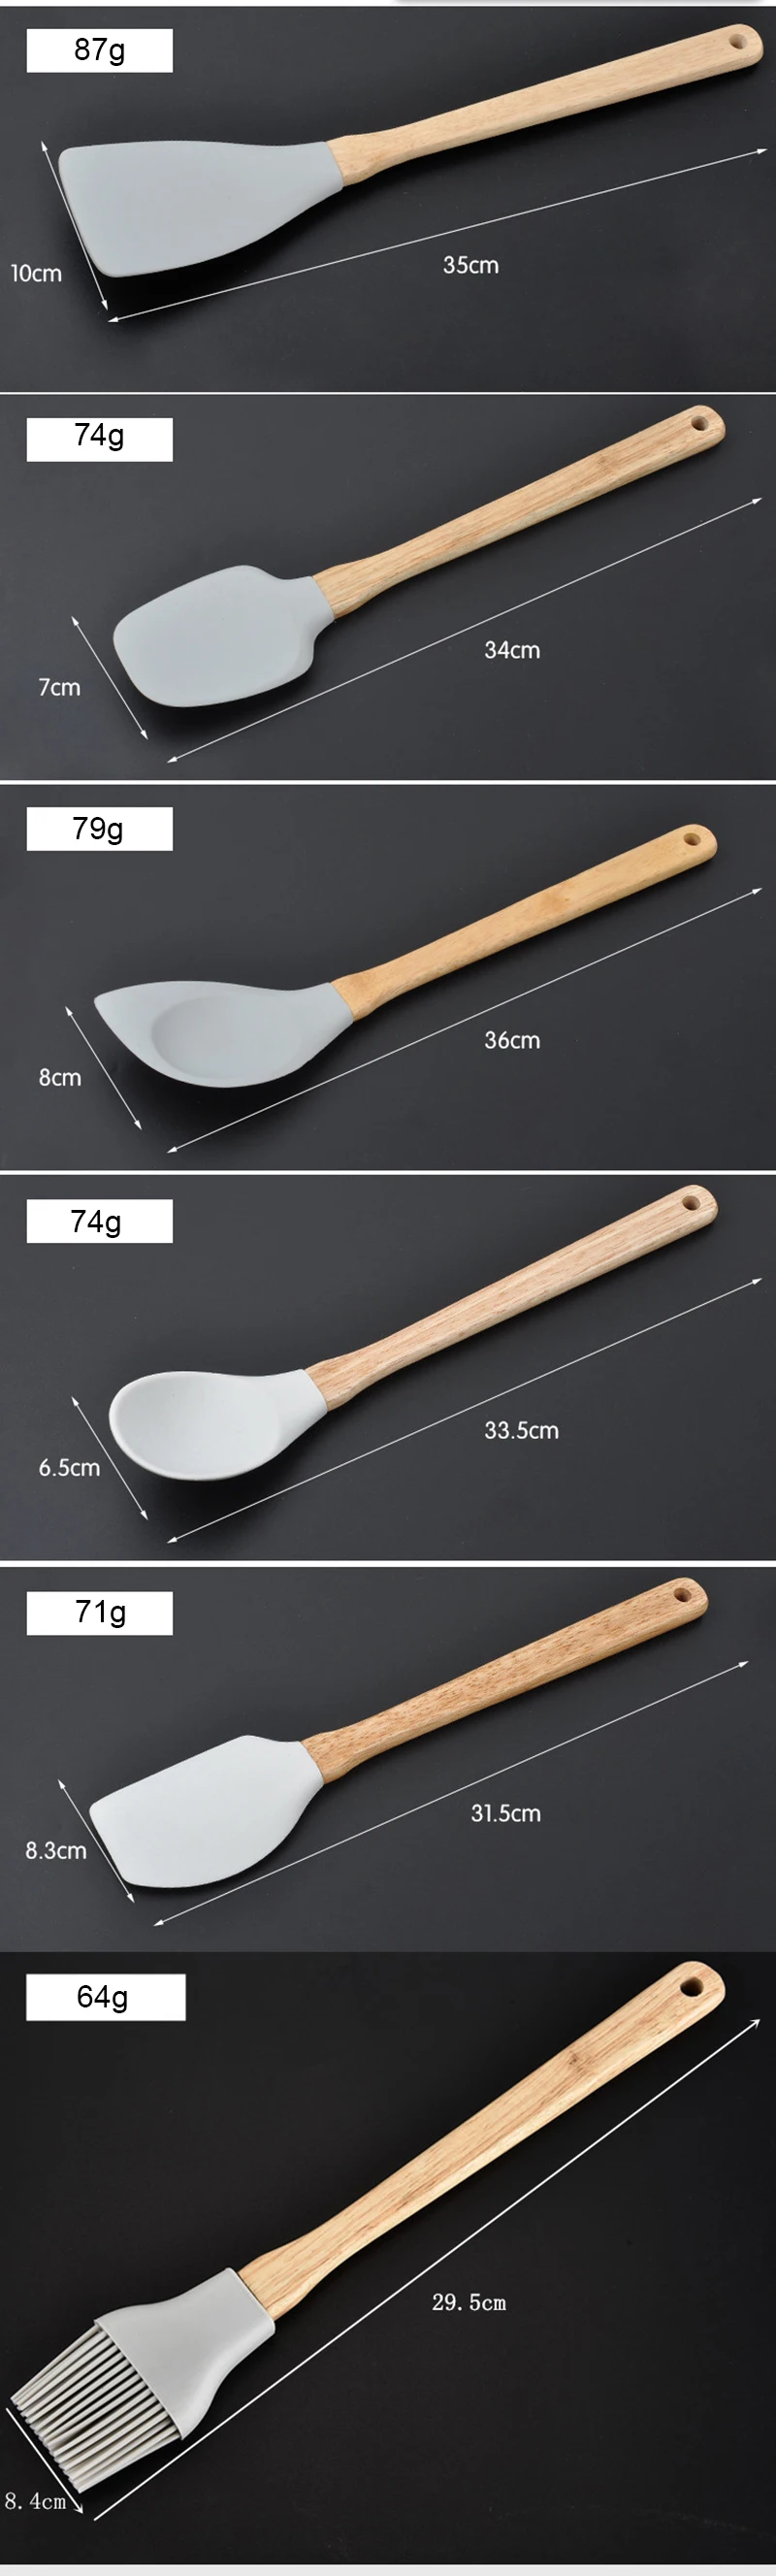 6 шт. FDA кухонные силиконовые инструменты для приготовления пищи деревянная ручка ложка лопатка Черпак щетка ковш посуда кухонные инструменты набор посуды